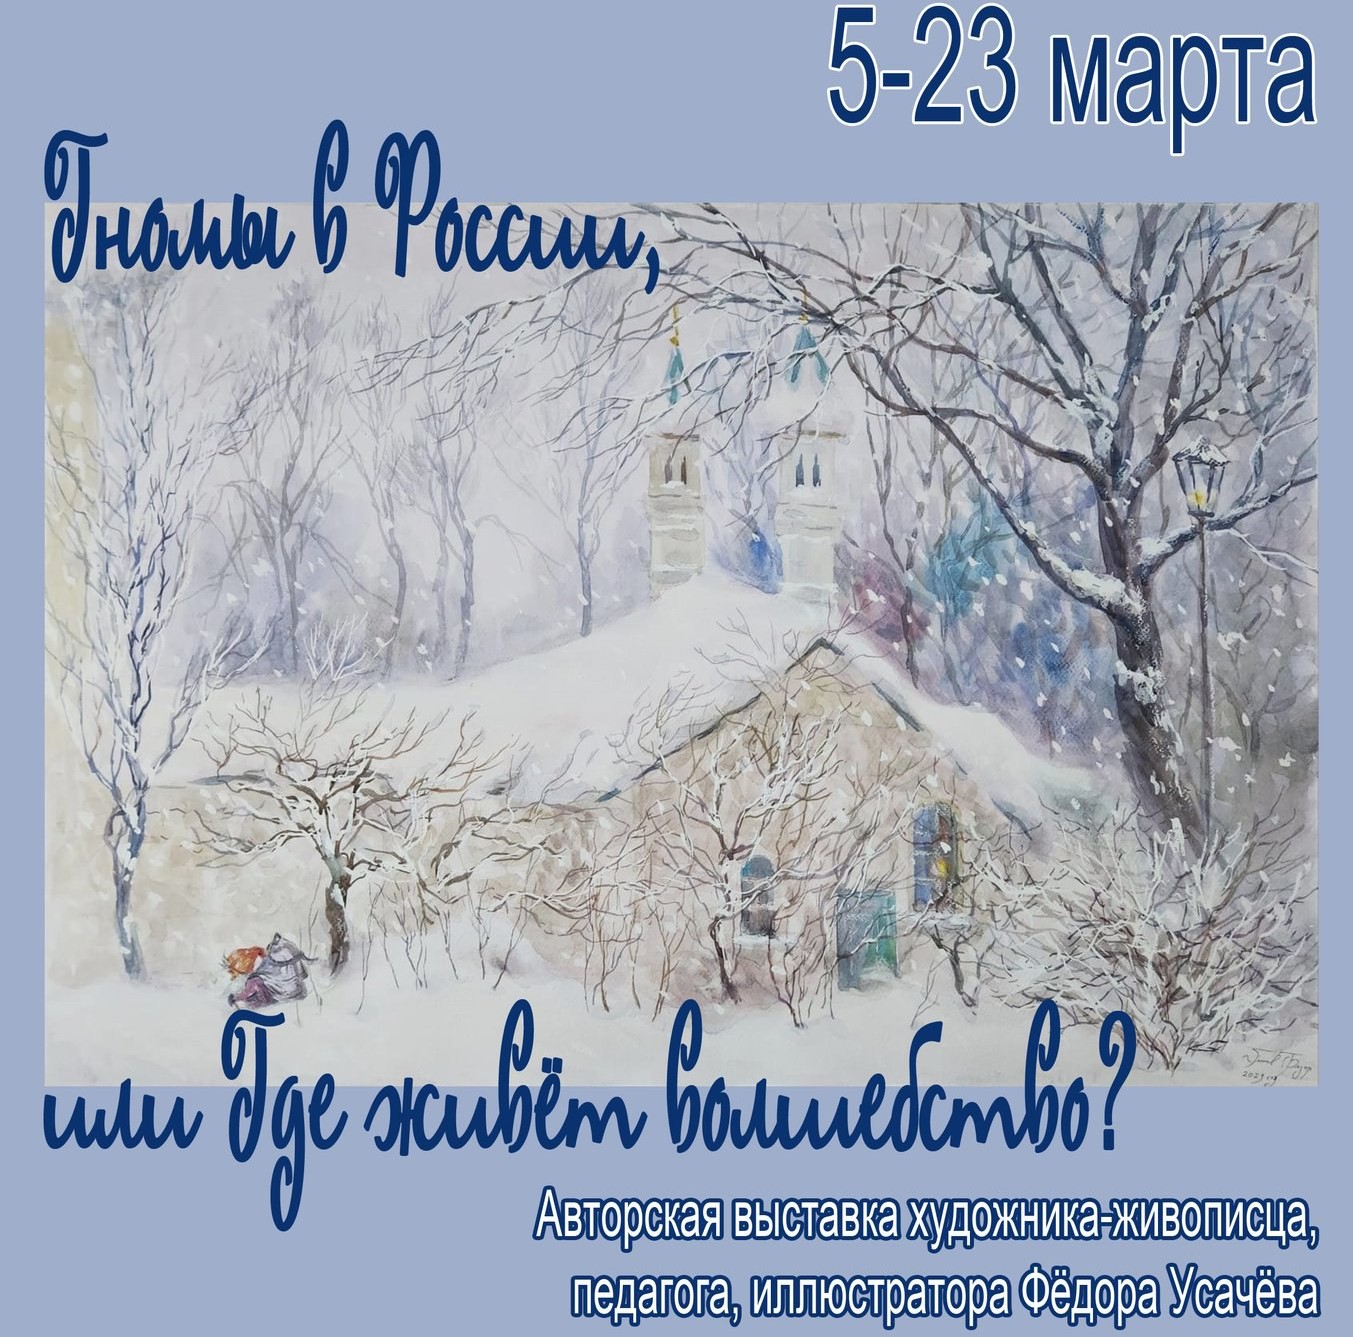 Выставку «Гномы в России, или Где живёт волшебство» покажут в музейно-выставочном комплексе Реутова 5 марта